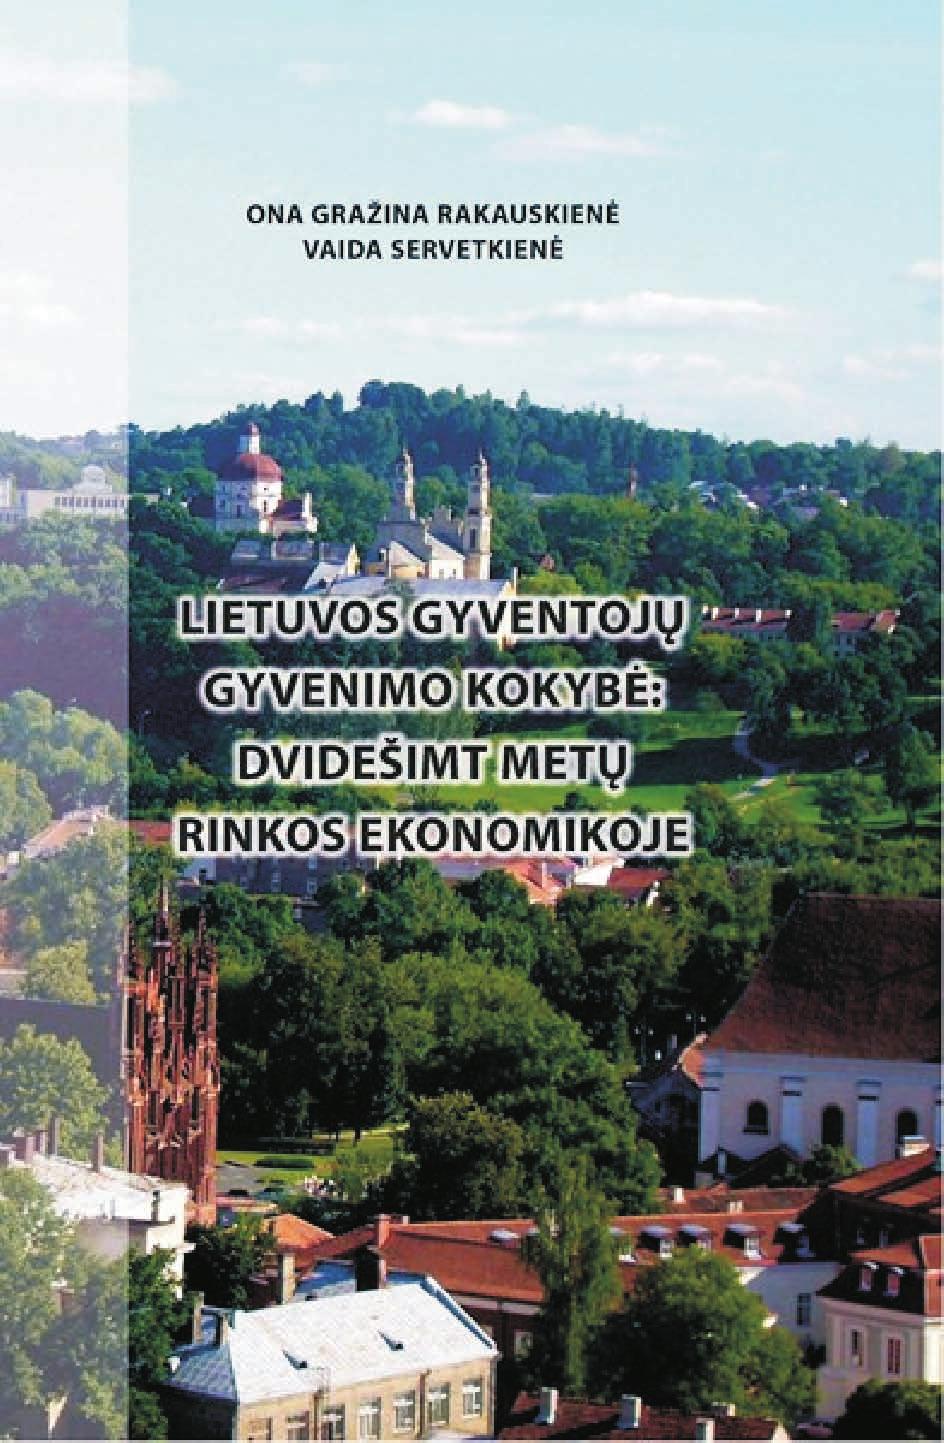 ISSN 1822-8011 (print) ISSN 1822-8038 (online) INTELEKTINĖ EKONOMIKA INTELLECTUAL ECONOMICS 2011, Vol. 5, No. 4(12), p.